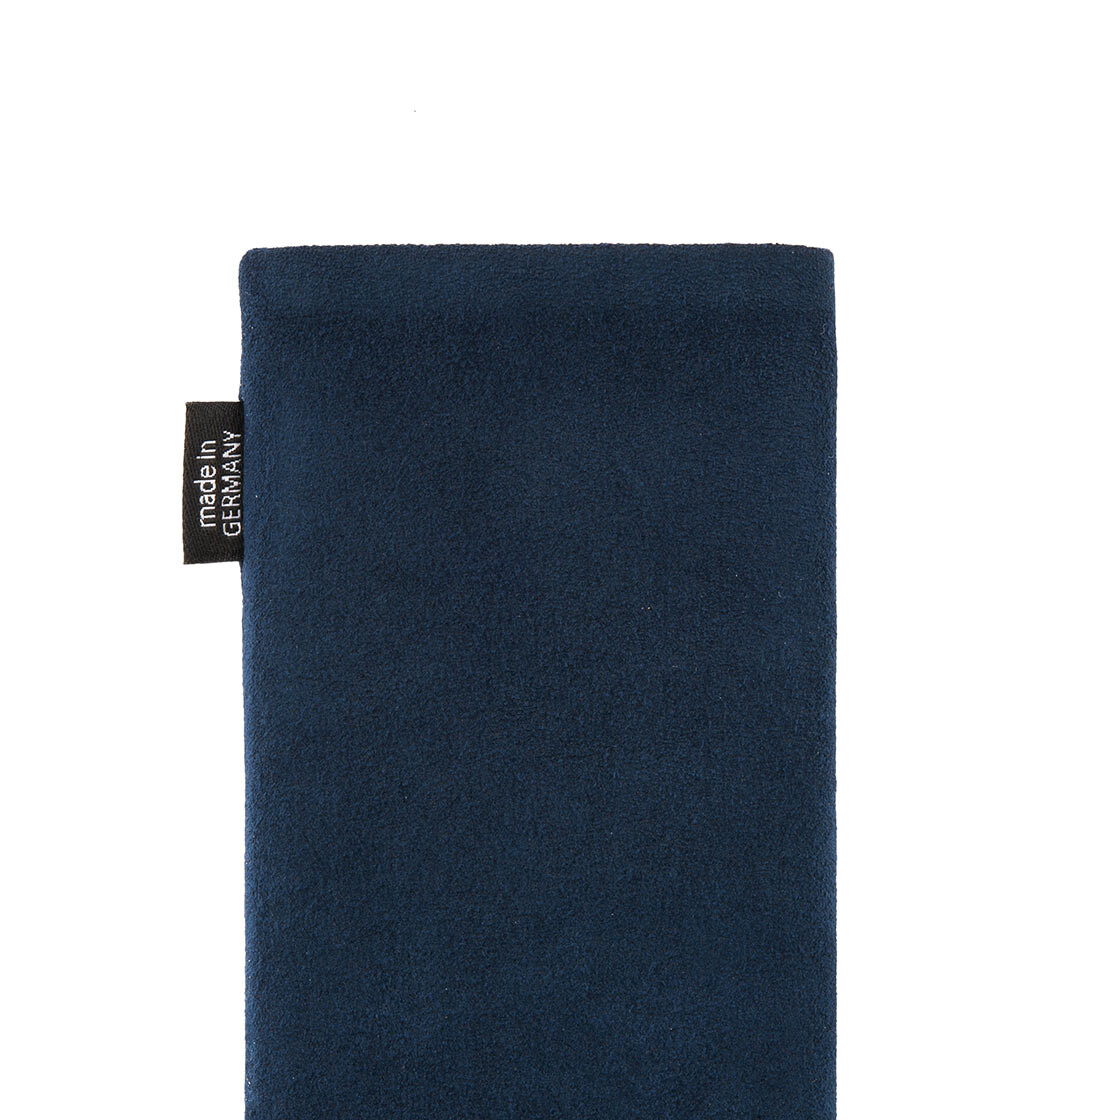 Made in Germany Hülle mit Reinigungsfunktion fitBAG Classic Blau Handytasche Tasche aus original Alcantara mit Microfaserinnenfutter für Huawei P40 Pro 